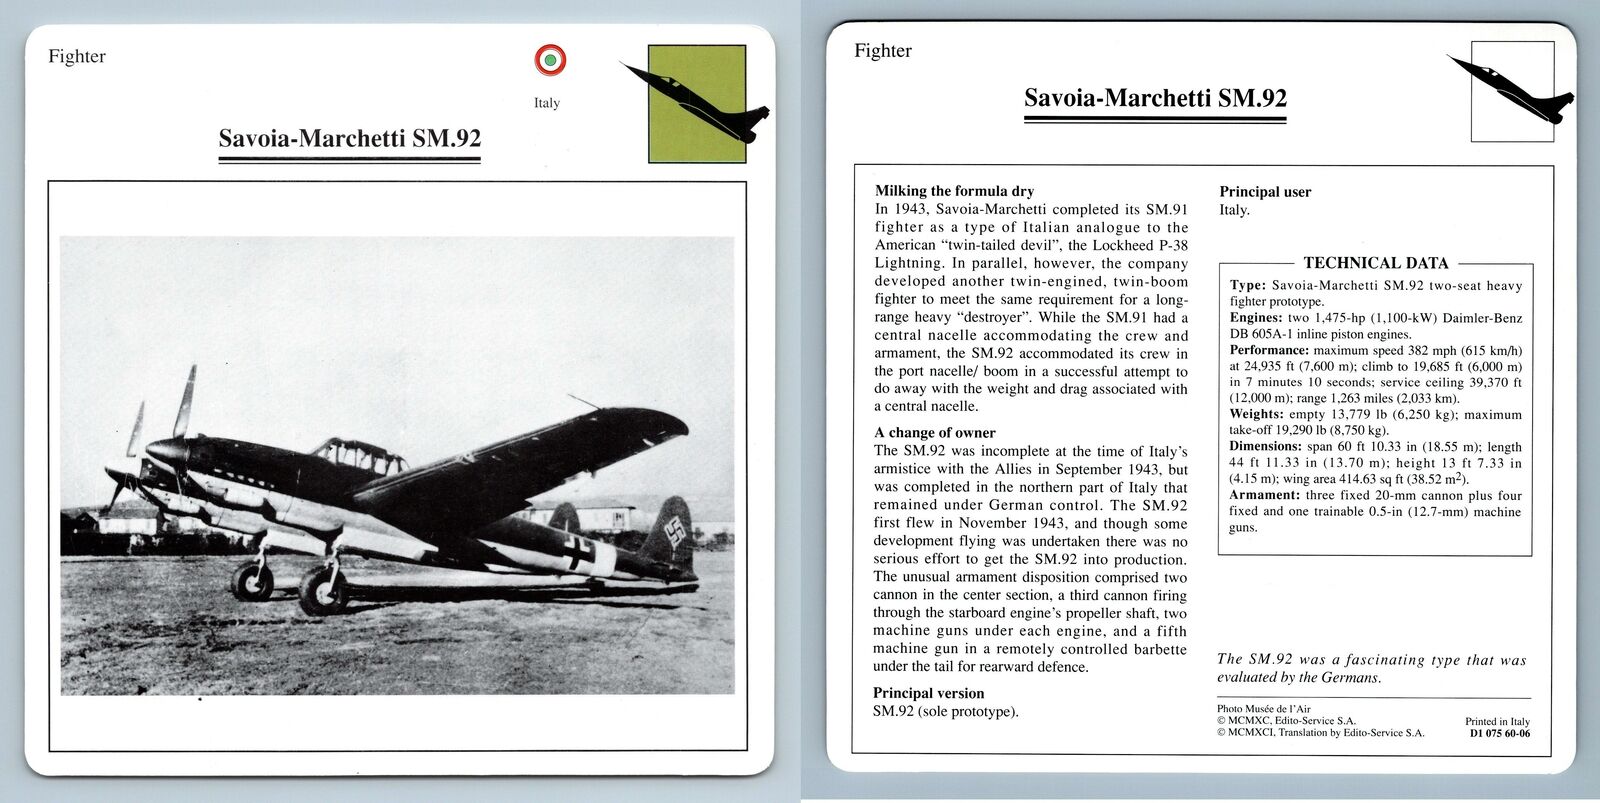 Savoia-Marchetti SM.92 - Fighter - Warplanes Collectors Club Card